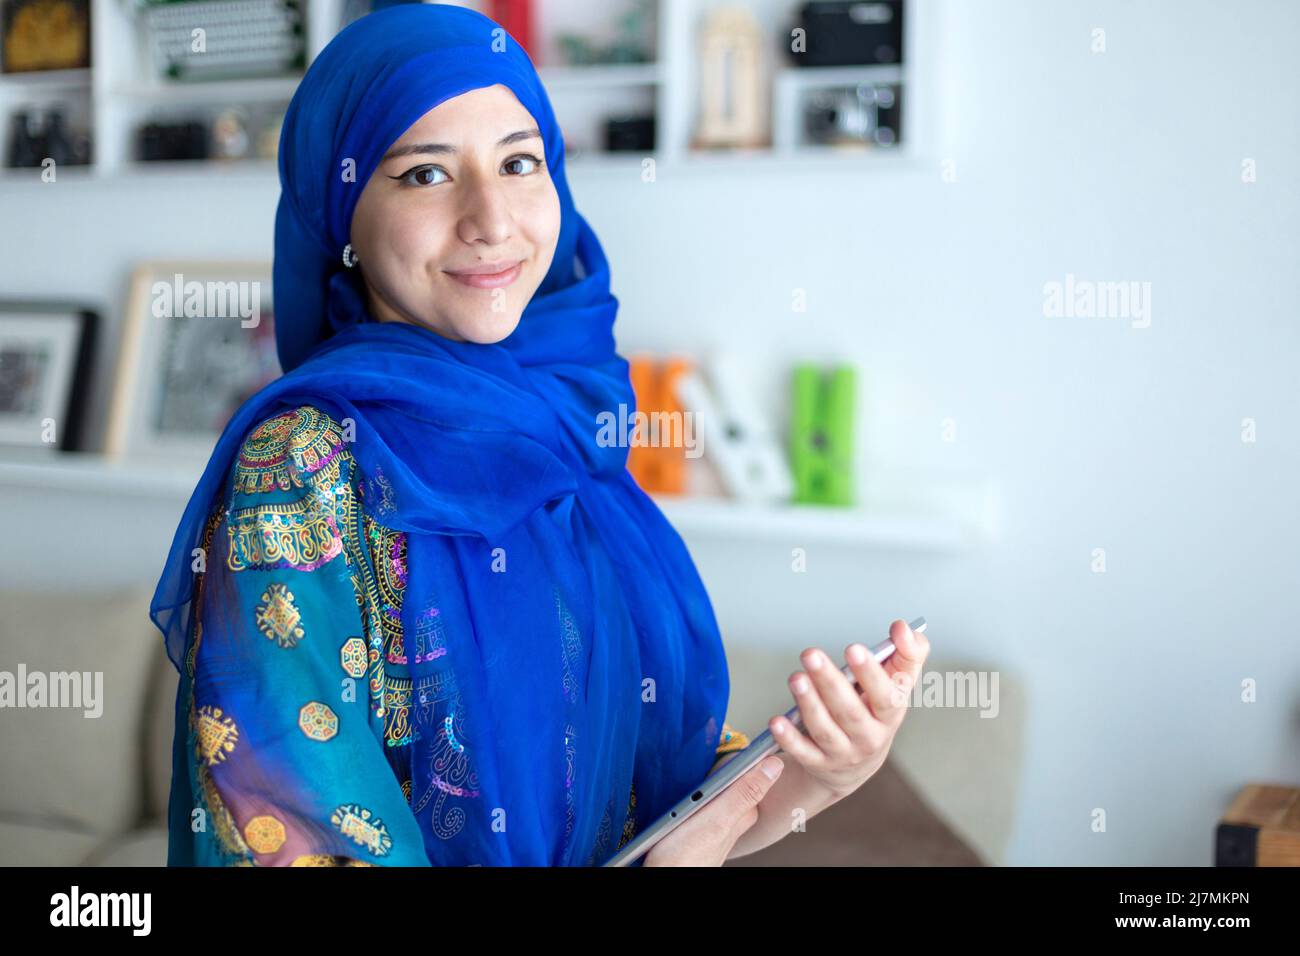 Jeune femme souriante à la maison portant une robe musulmane traditionnelle typique. Elle tient une tablette numérique. Espace pour le texte. Banque D'Images